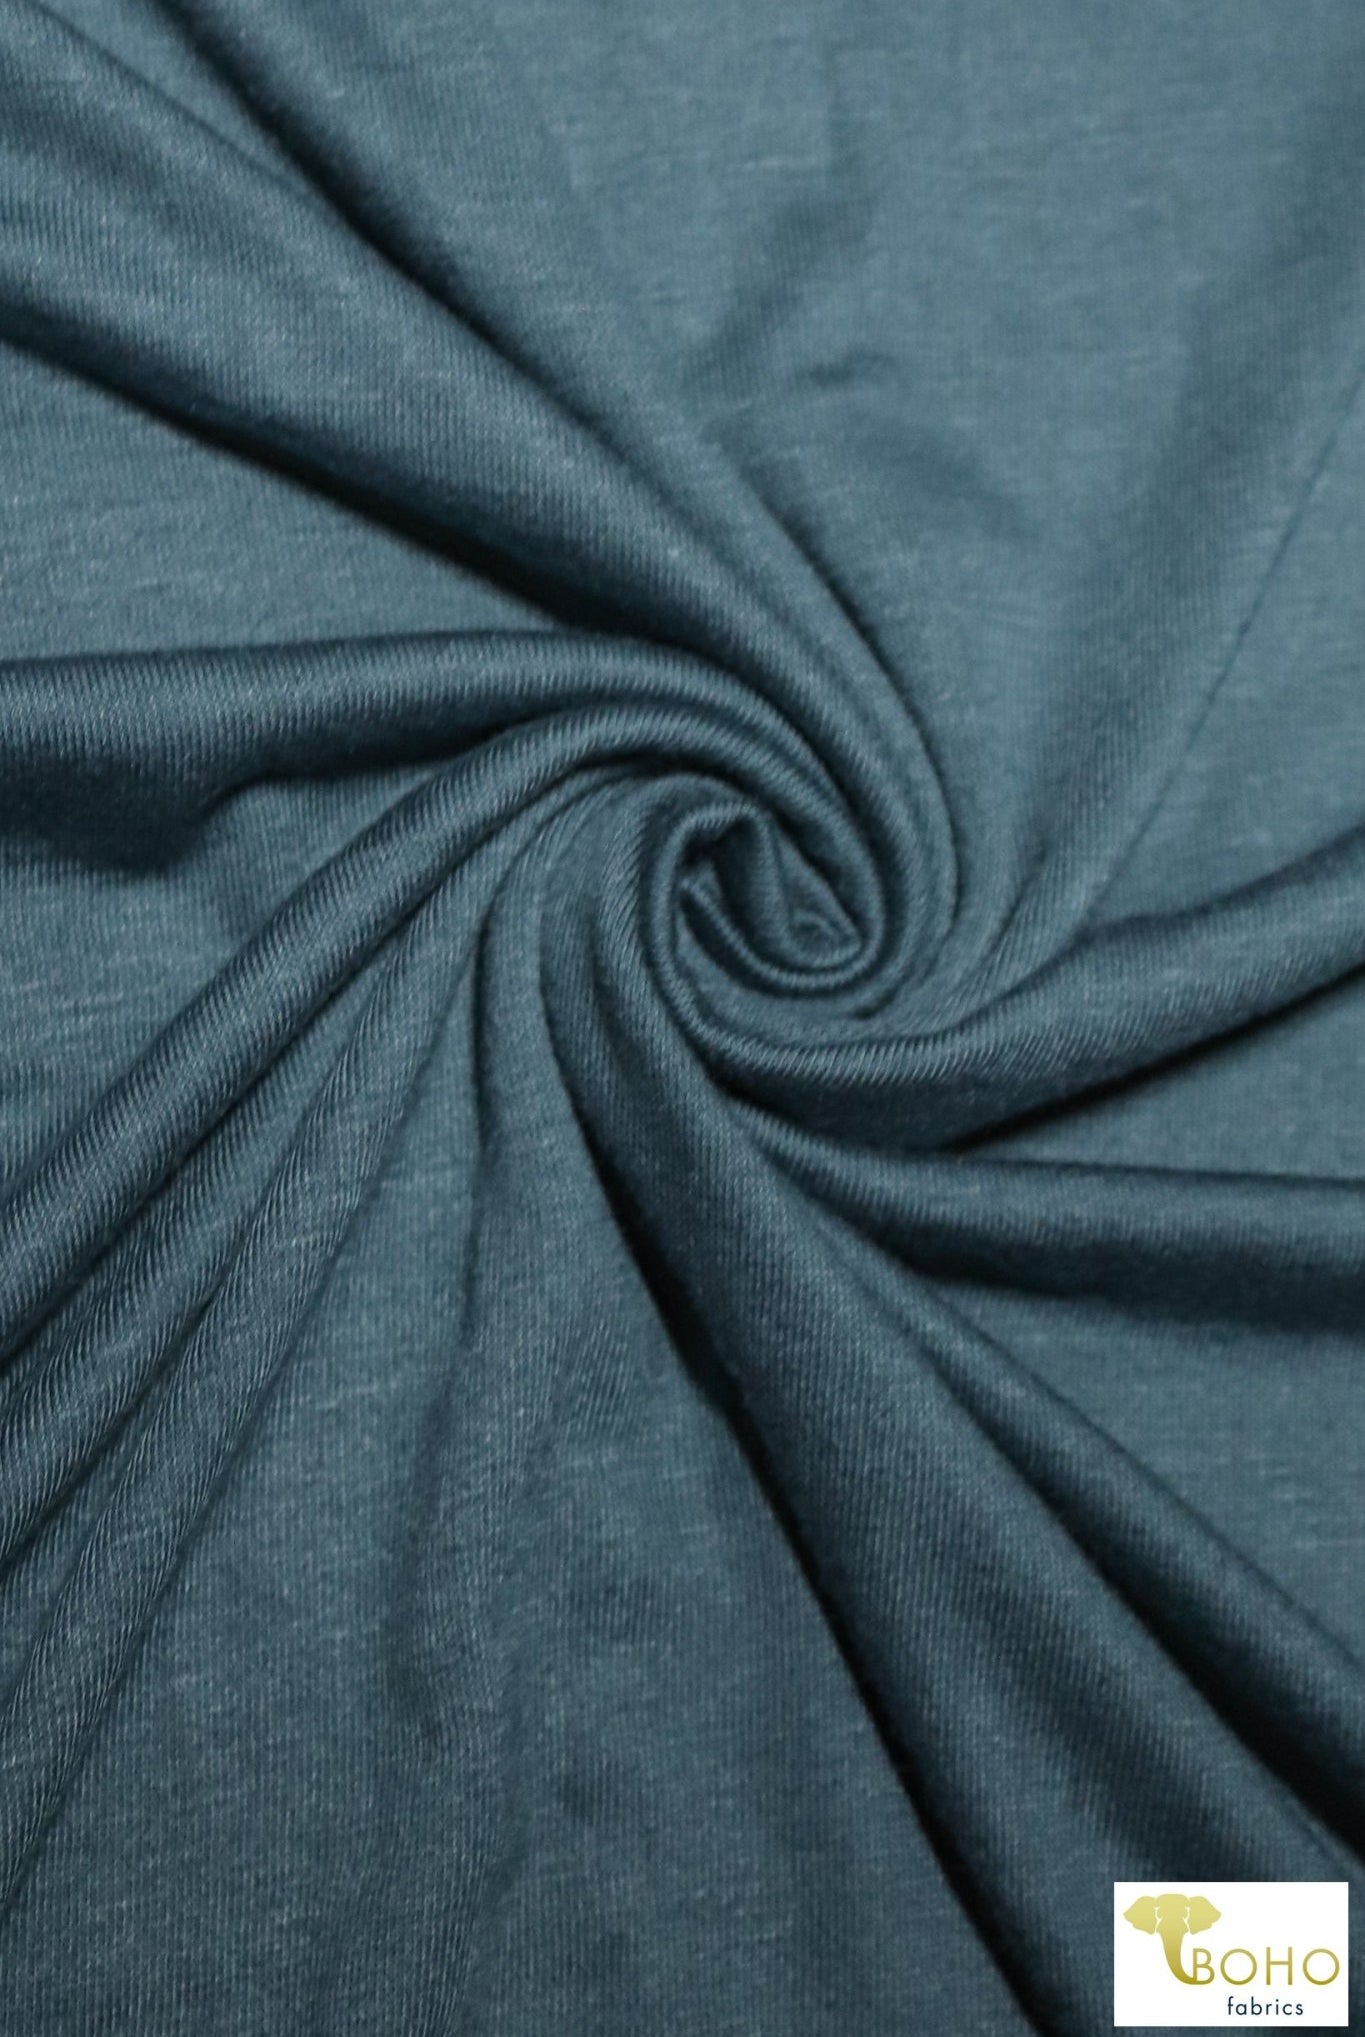 Last Cuts! Steel Blue, Rayon Spandex Knit. RJS-203. - Boho Fabrics